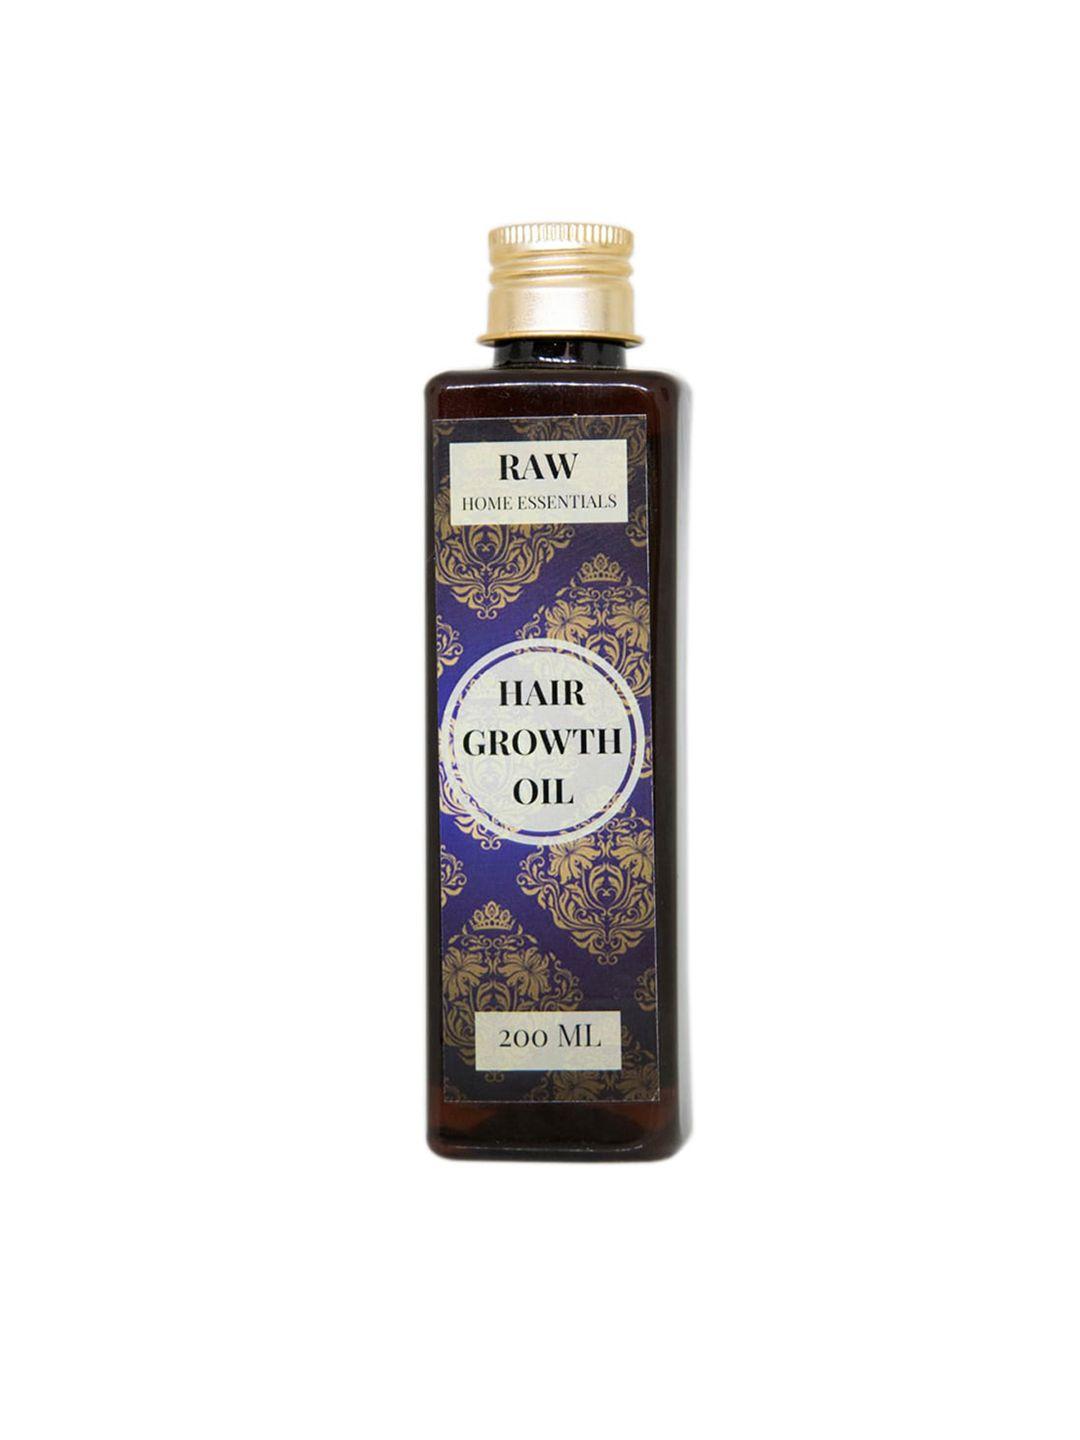 raw home essentials hair growth oil 200 ml